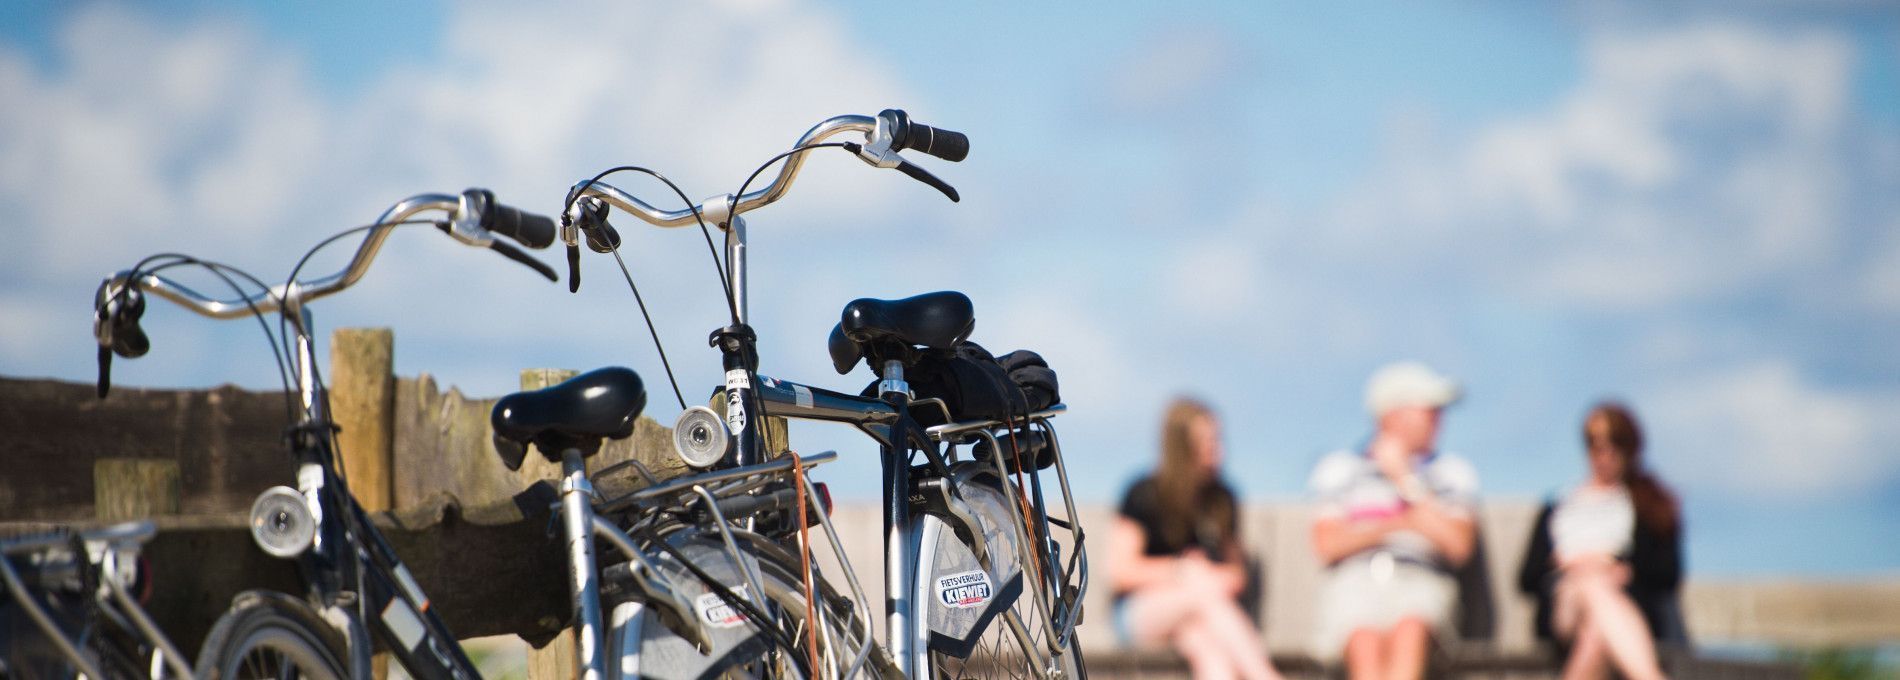 Bike rental - Tourist Information “VVV” Ameland